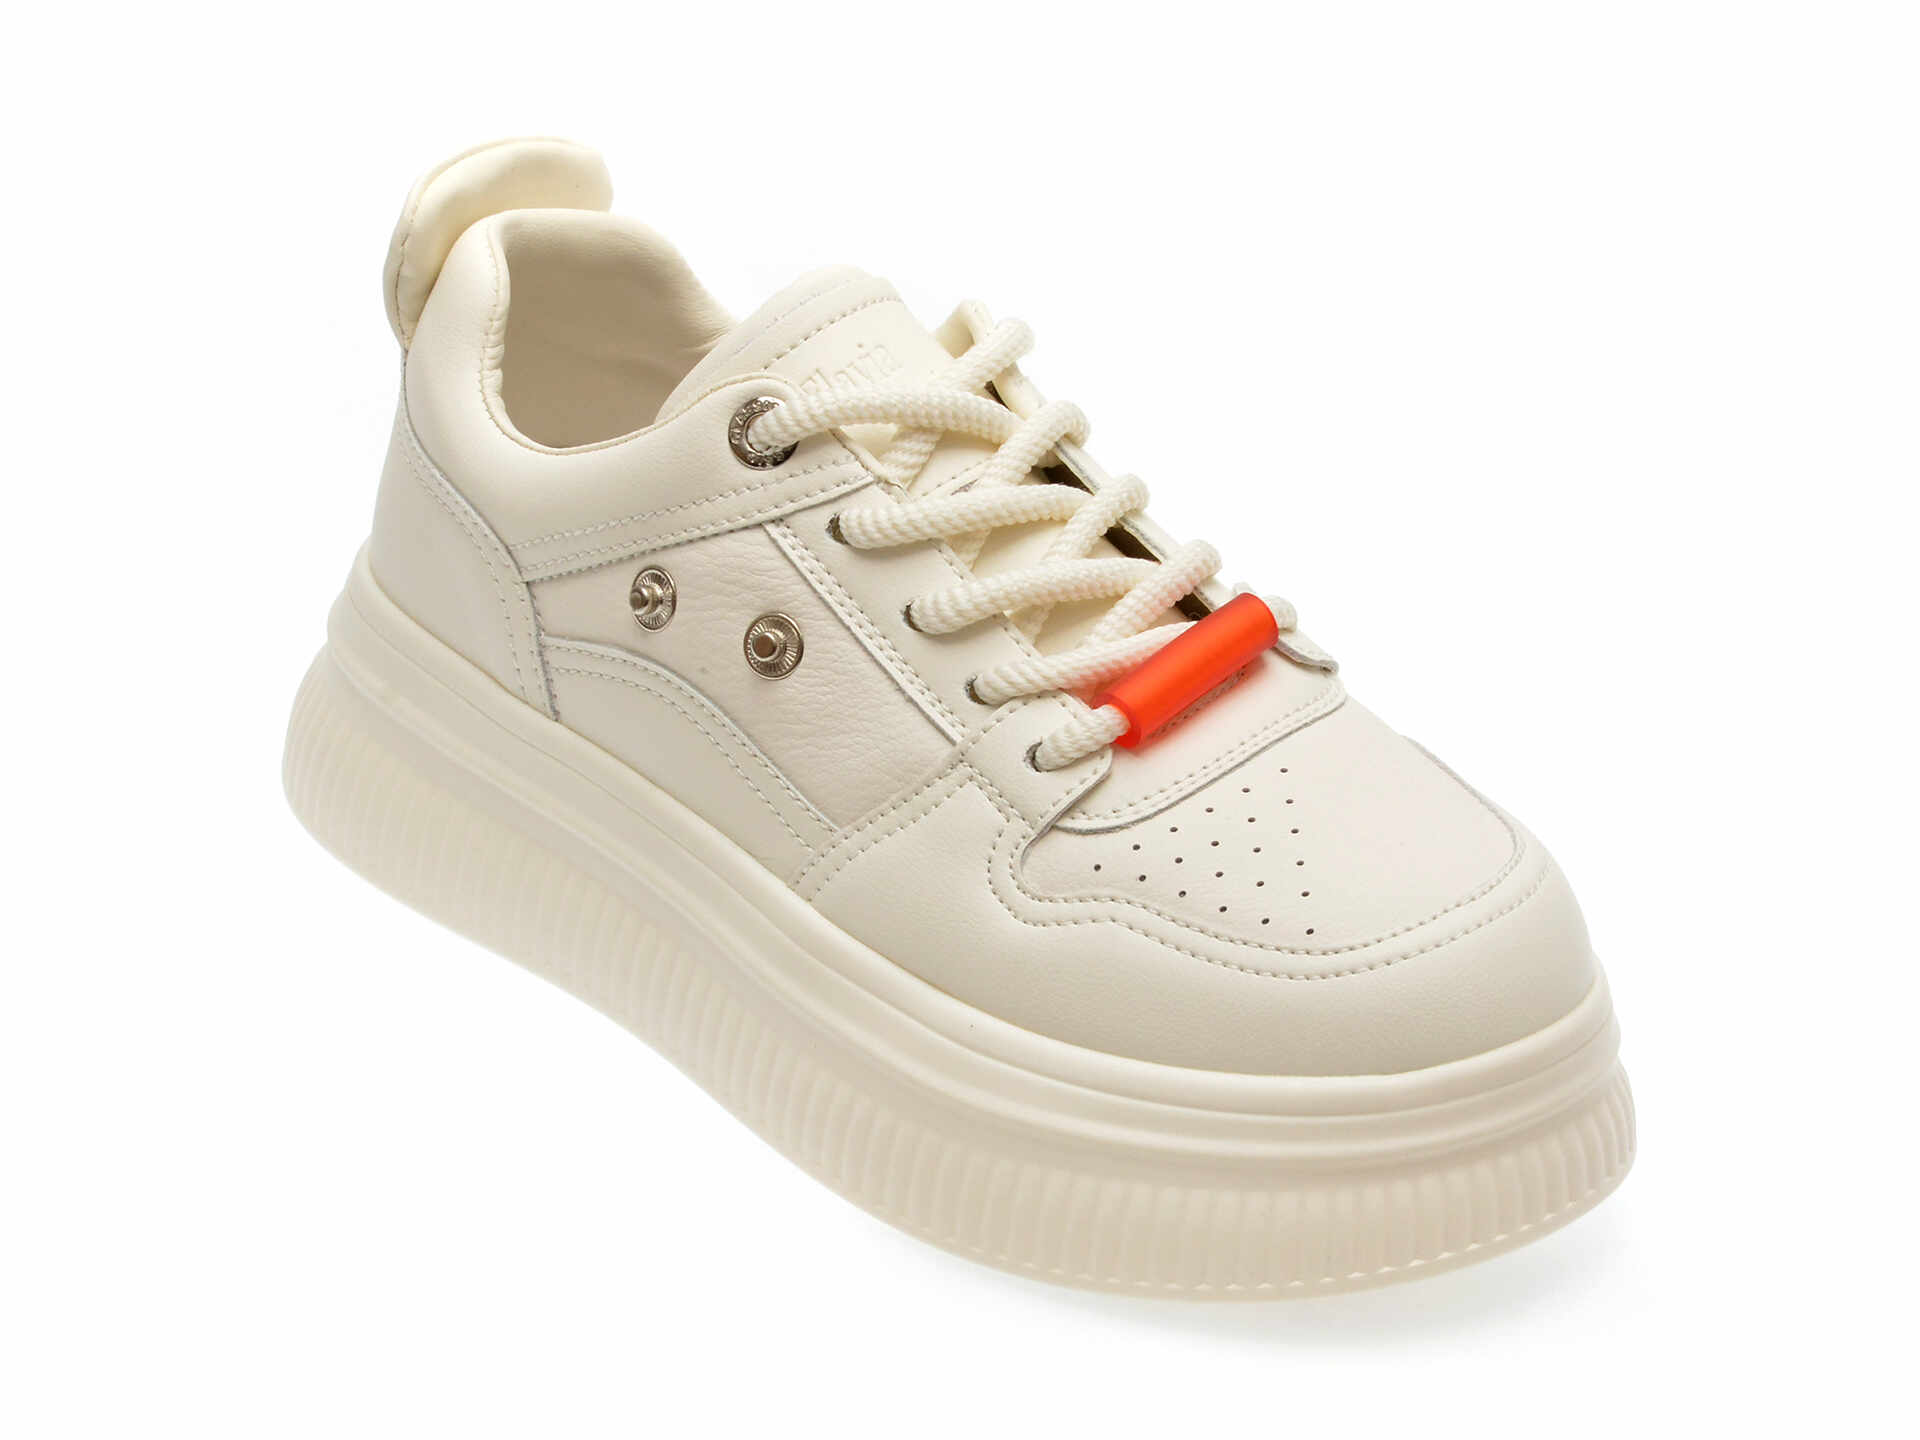 Pantofi casual FLAVIA PASSINI albi, 31C10, din piele naturala